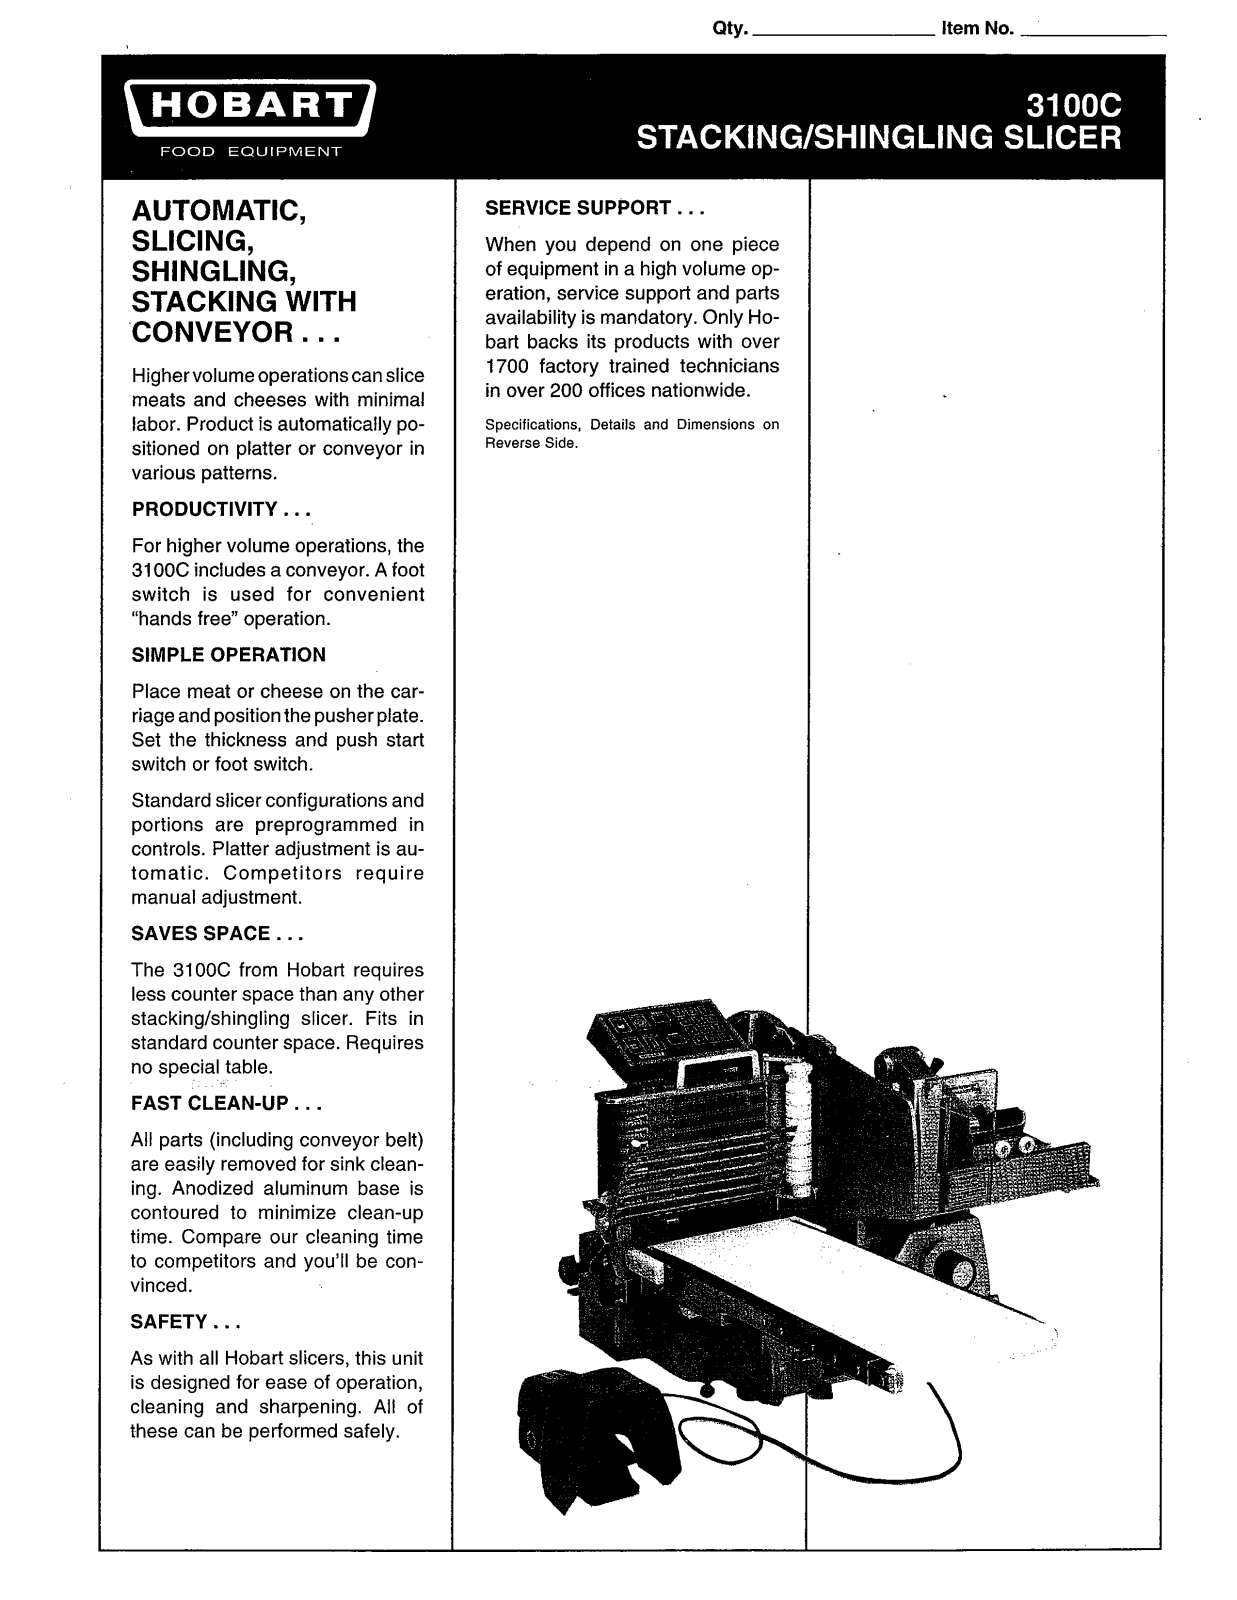 Hobart 3100C User Manual